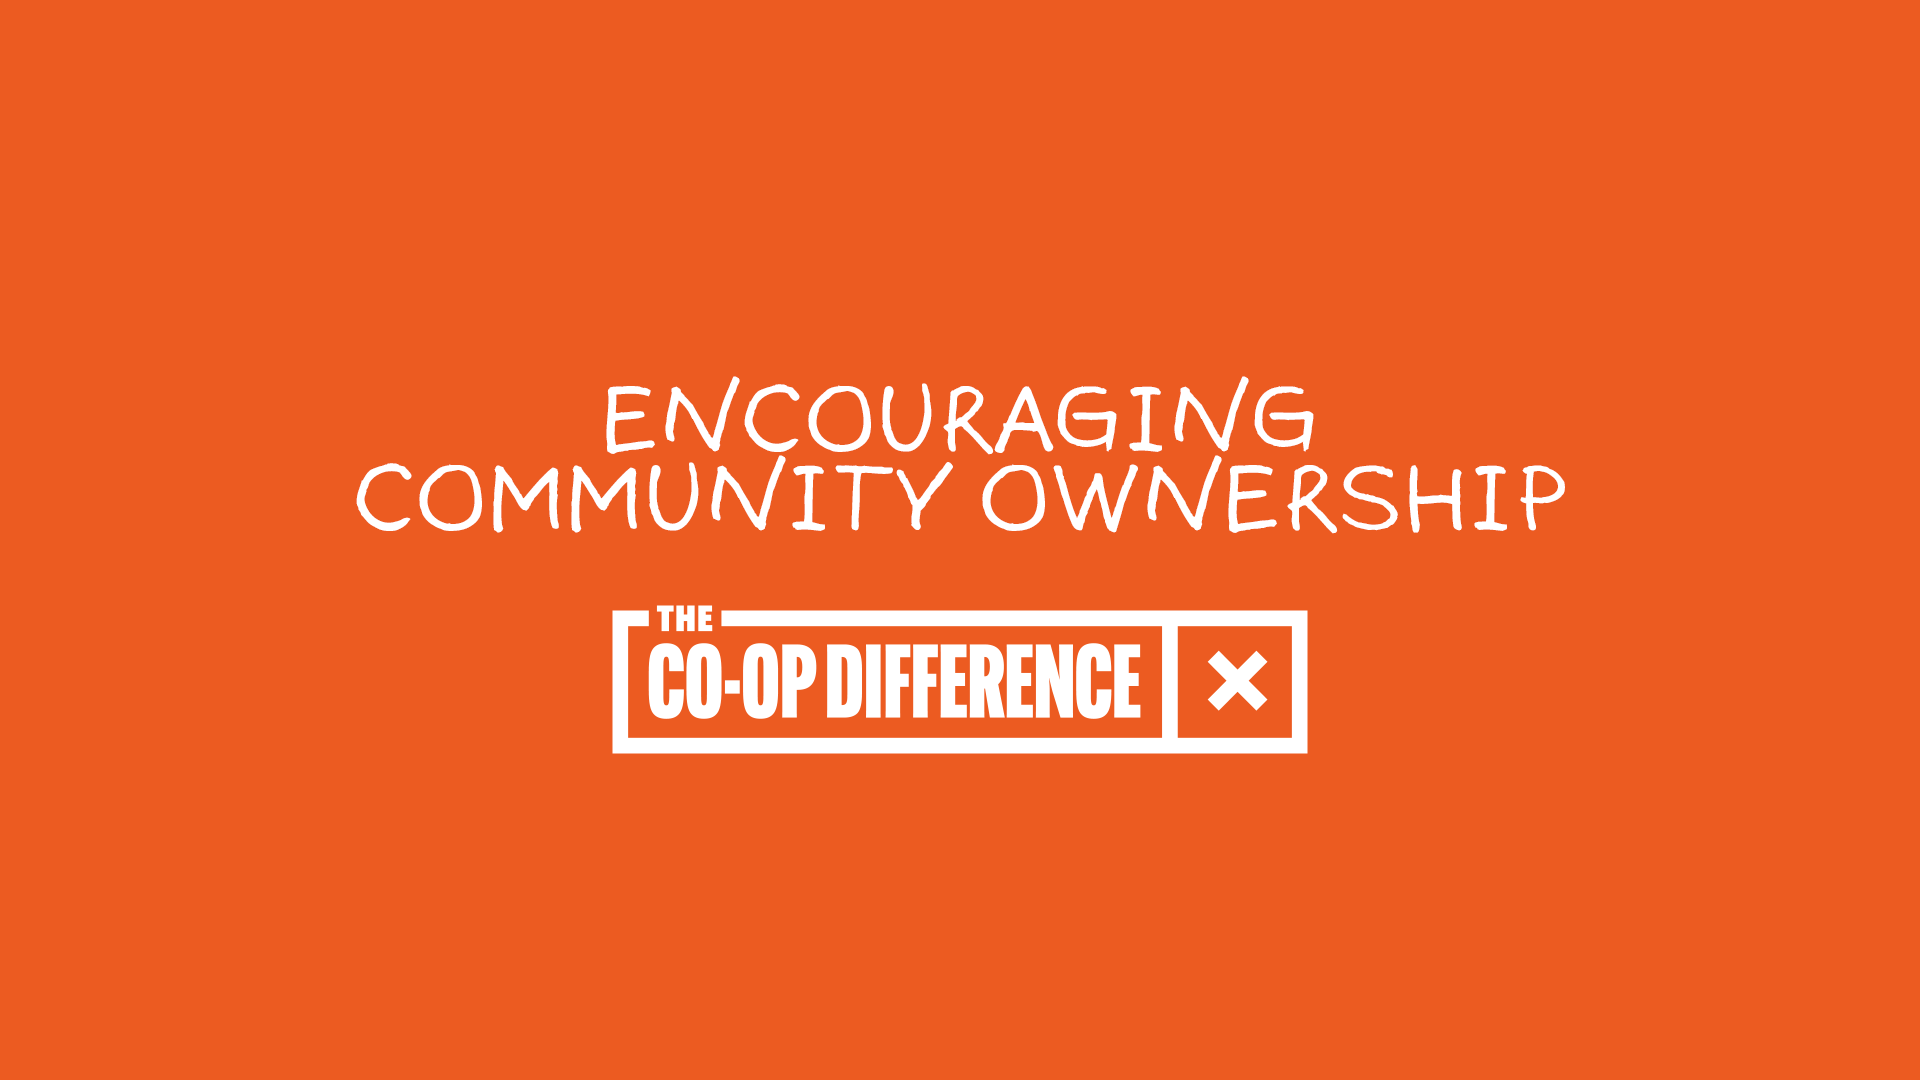 Community Ownership